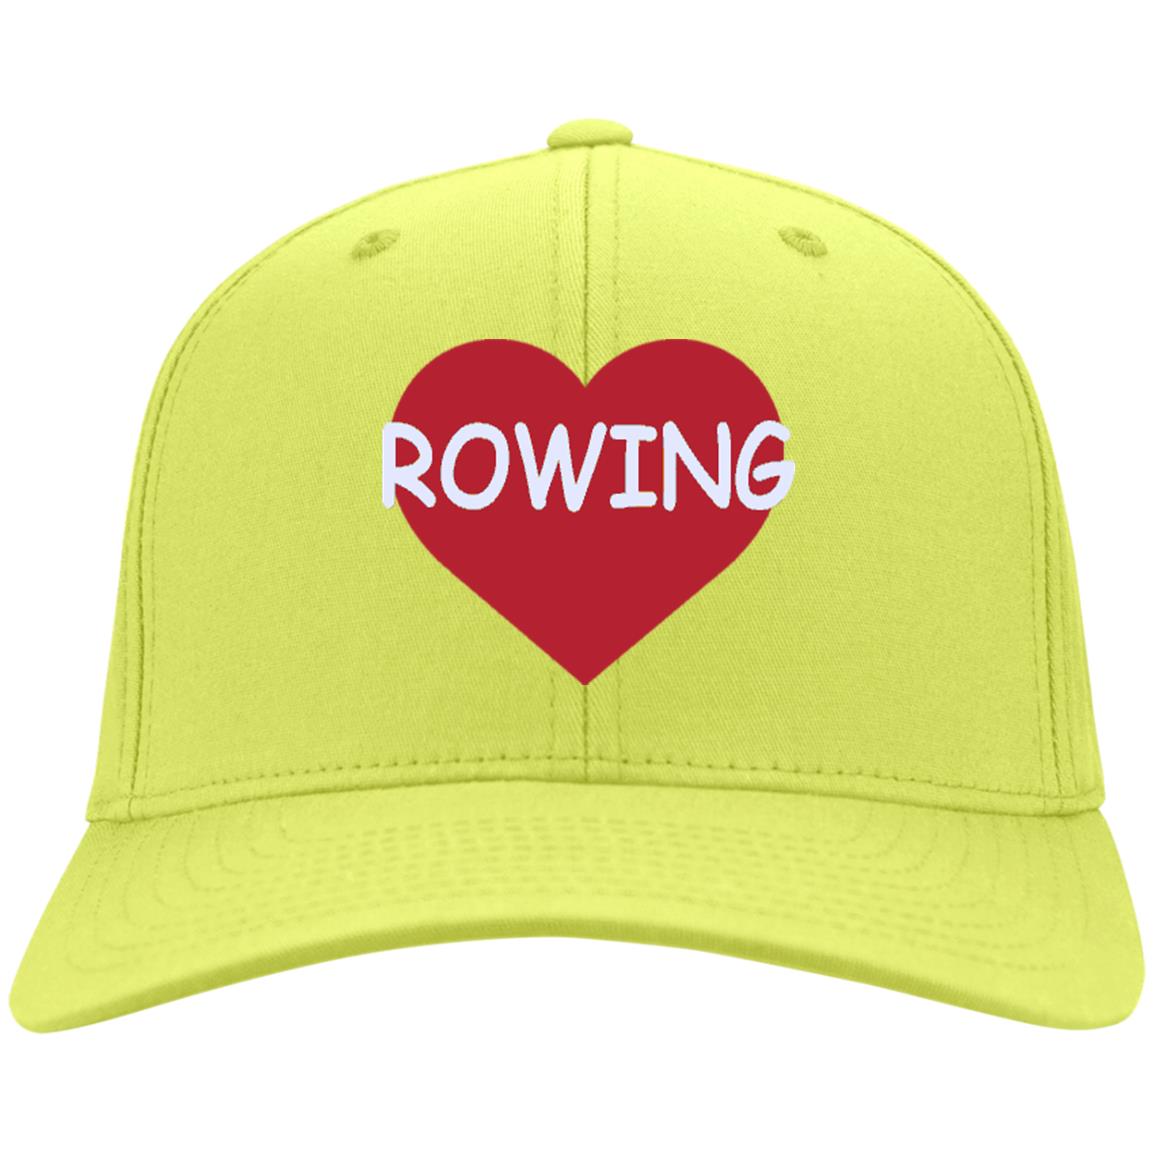 Rowing Sport Hat